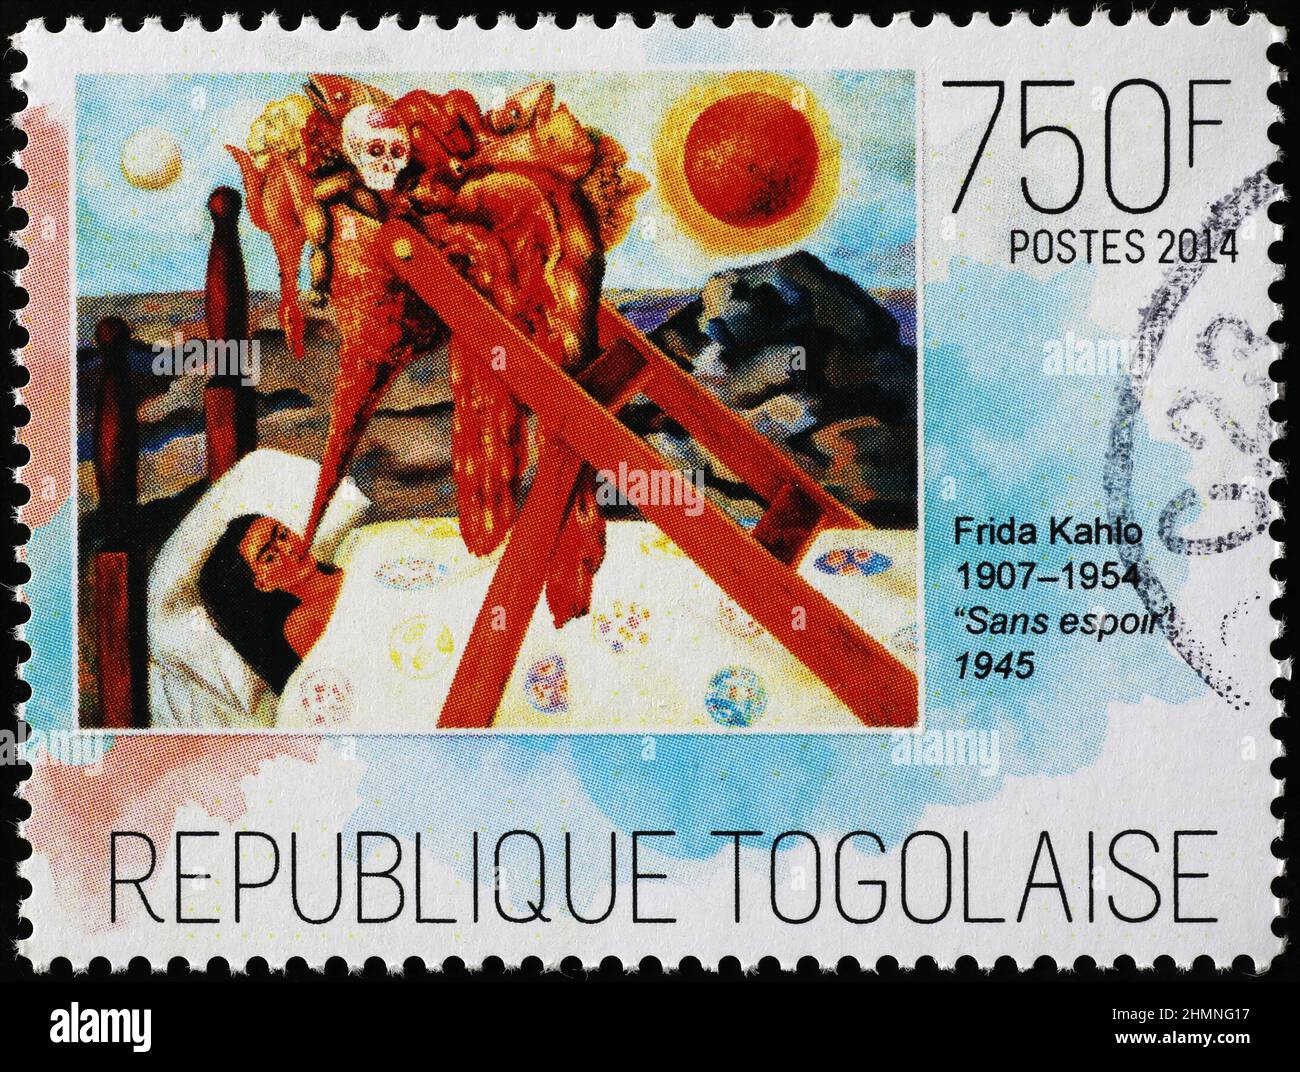 Senza speranza di Frida Kahlo sul francobollo Foto Stock